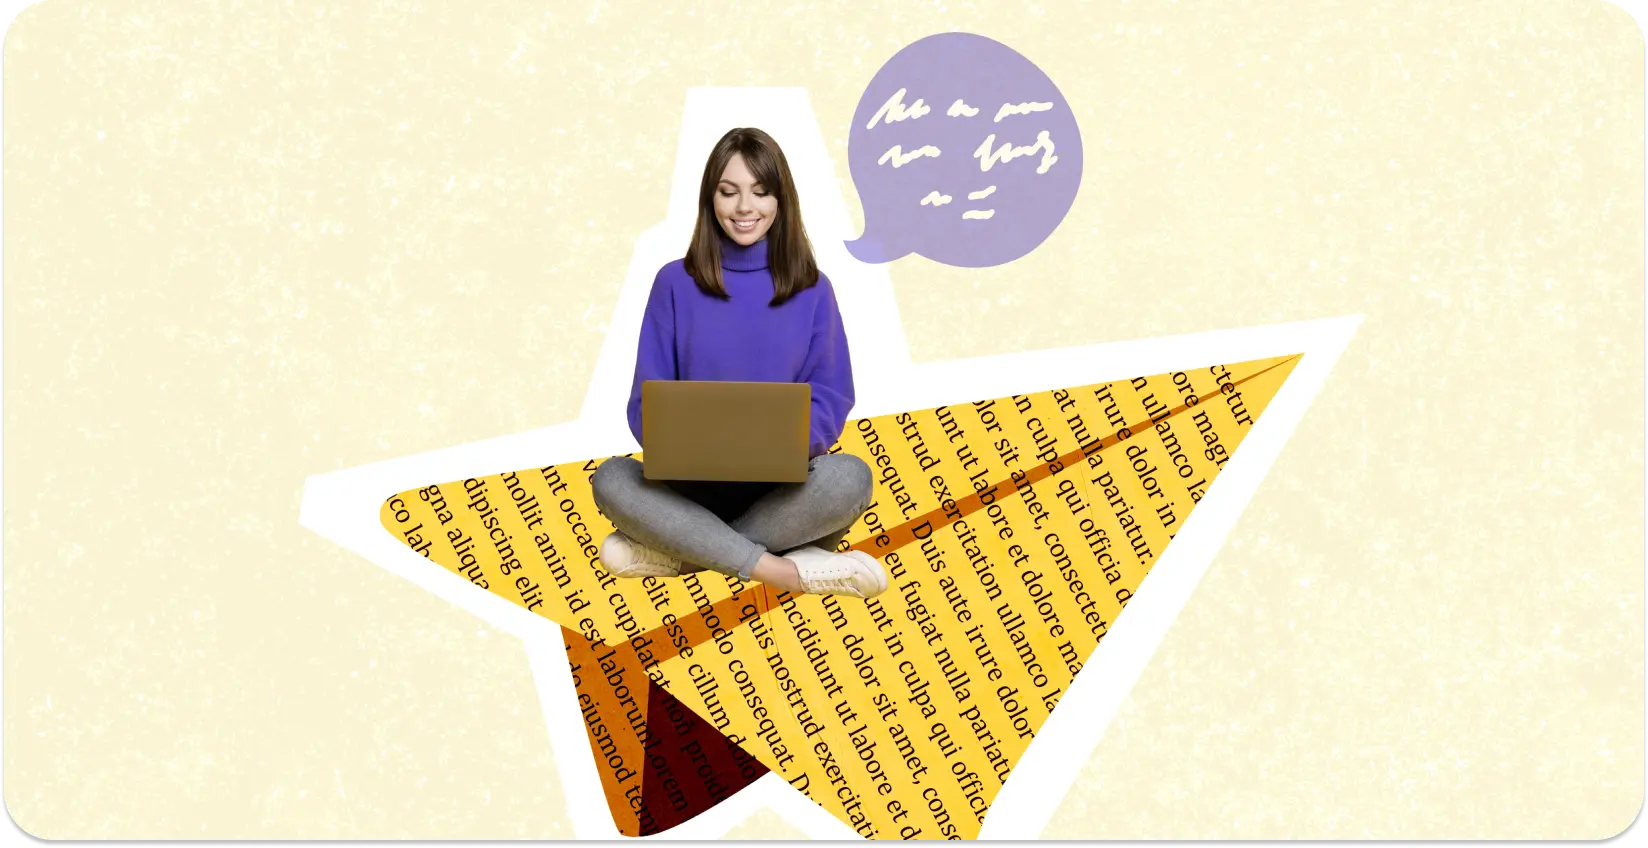 Một nhà văn ngồi trên một ảnh ghép hình ngôi sao của các trang chứa đầy văn bản với một máy tính xách tay.